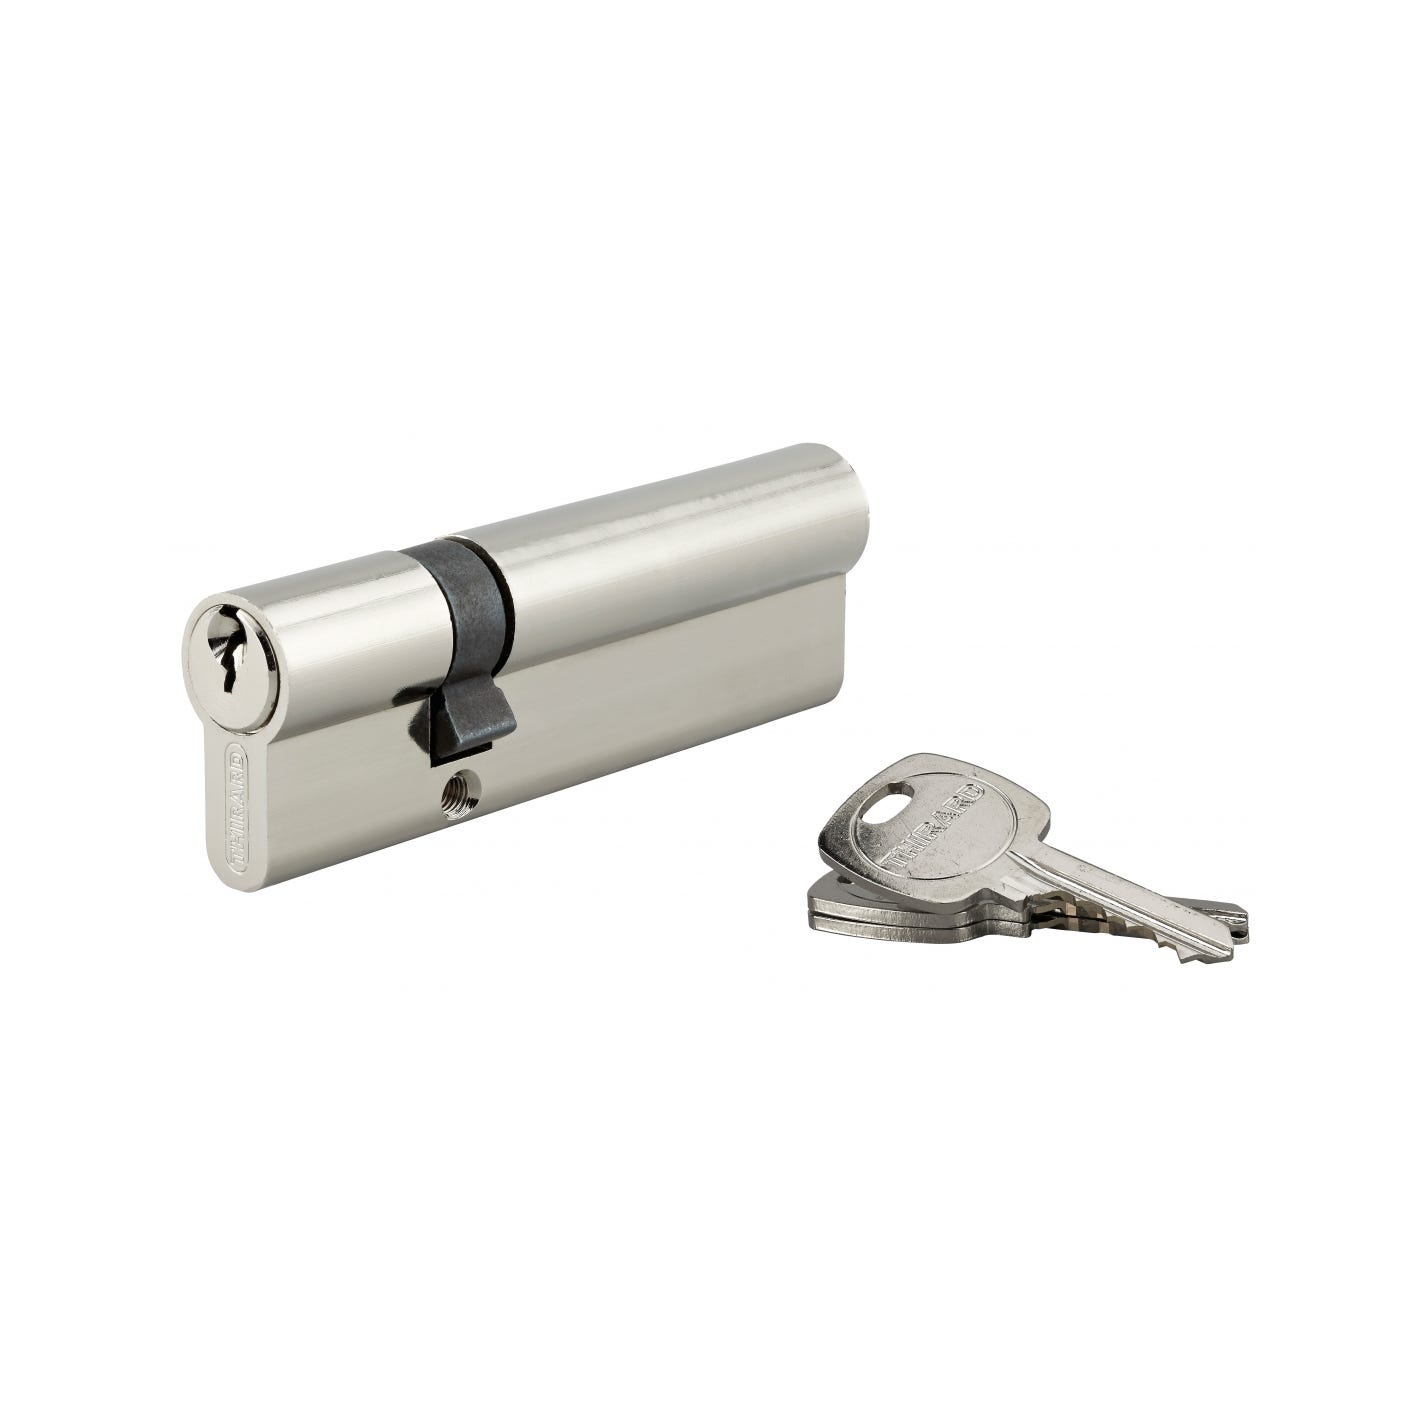 THIRARD - Cylindre de serrure double entrée, 30x70mm, anti-arrachement, nickel, 3 clés 0